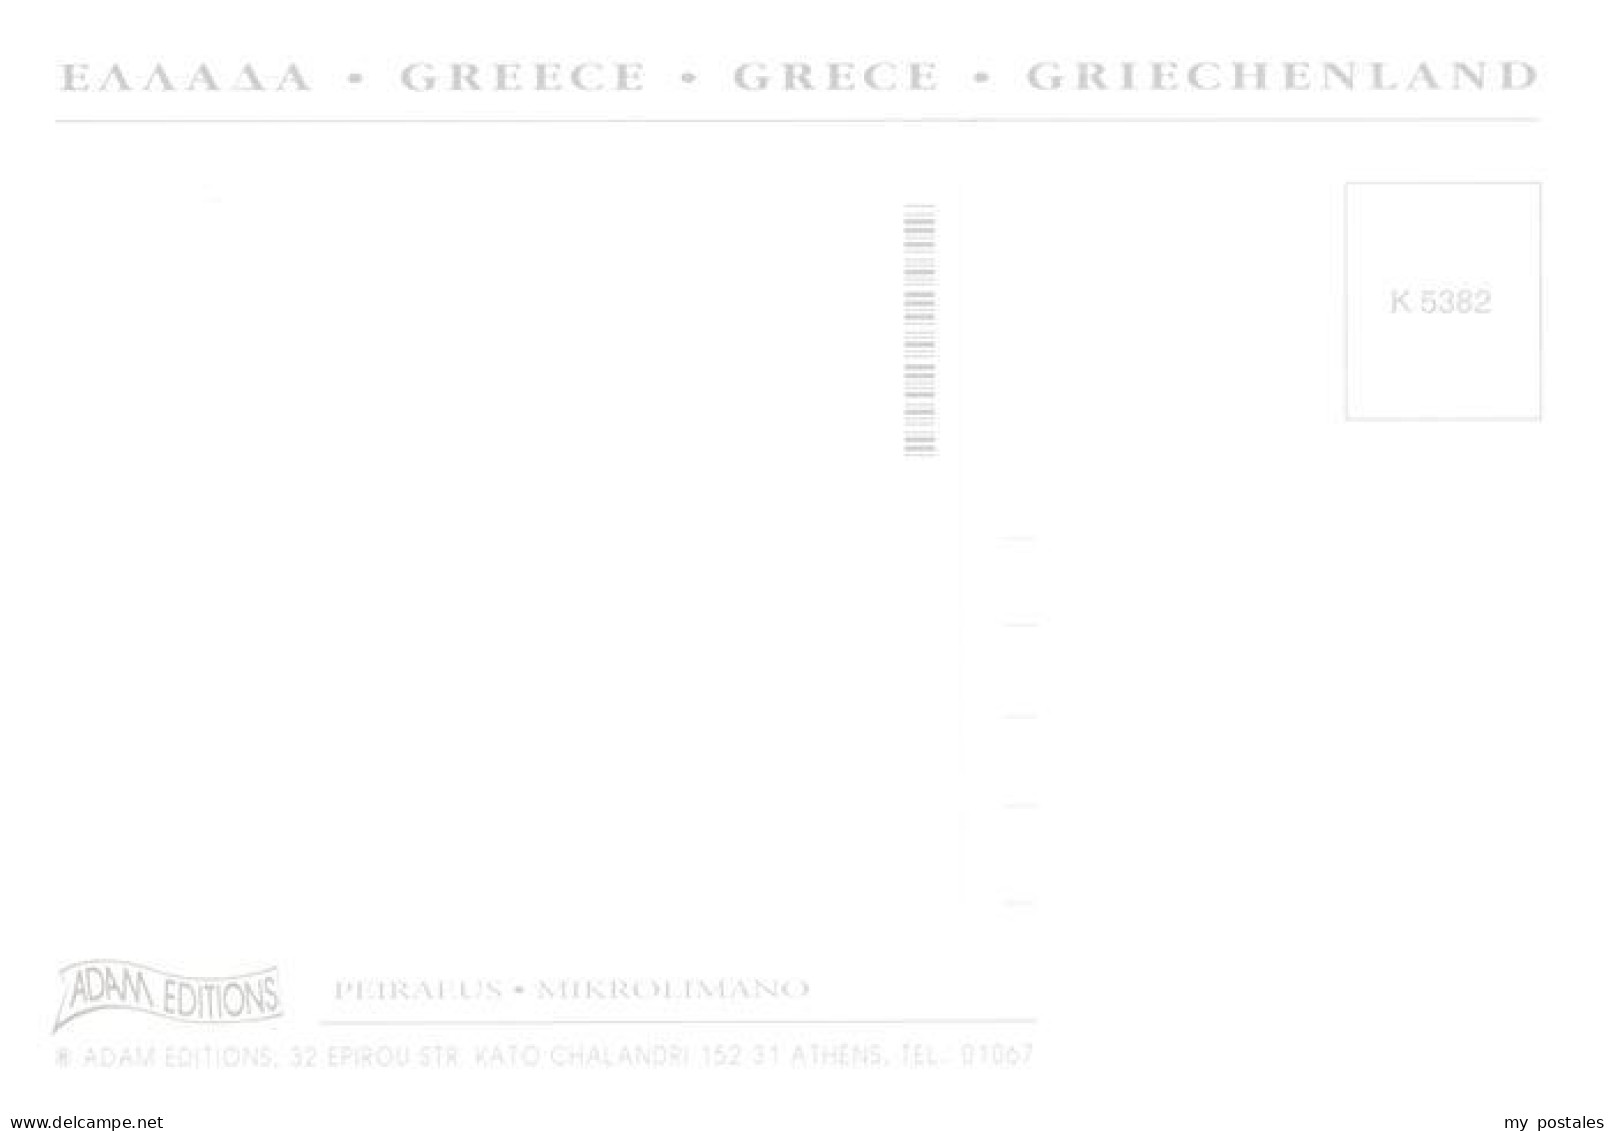 73945052 Microlimano_Piraeus_Piree_Pireus_Pireo_Greece Fliegeraufnahme - Griekenland